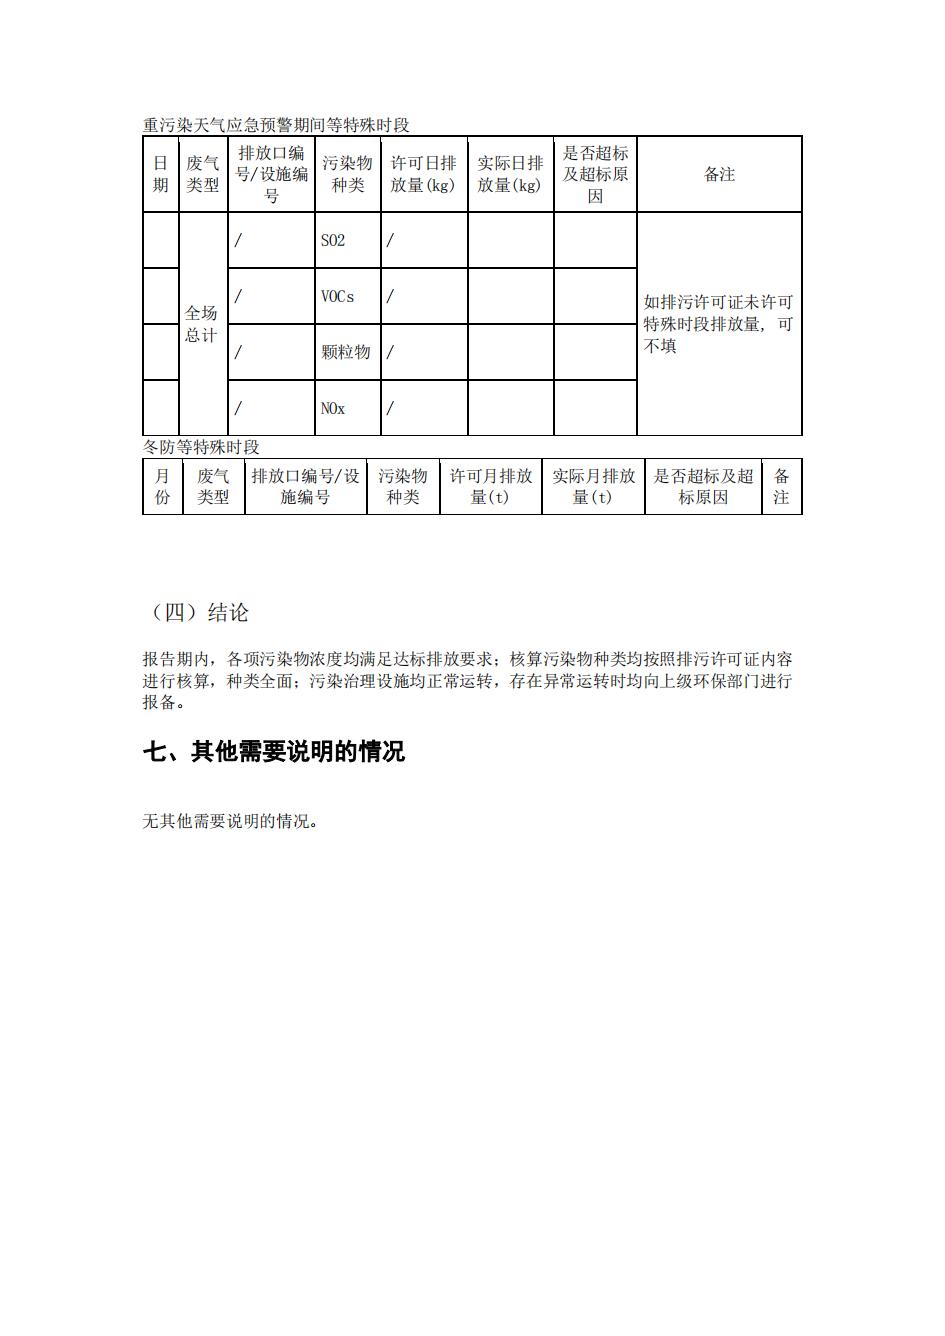 南京888集团电子游戏2022年环境信息披露_43.jpg